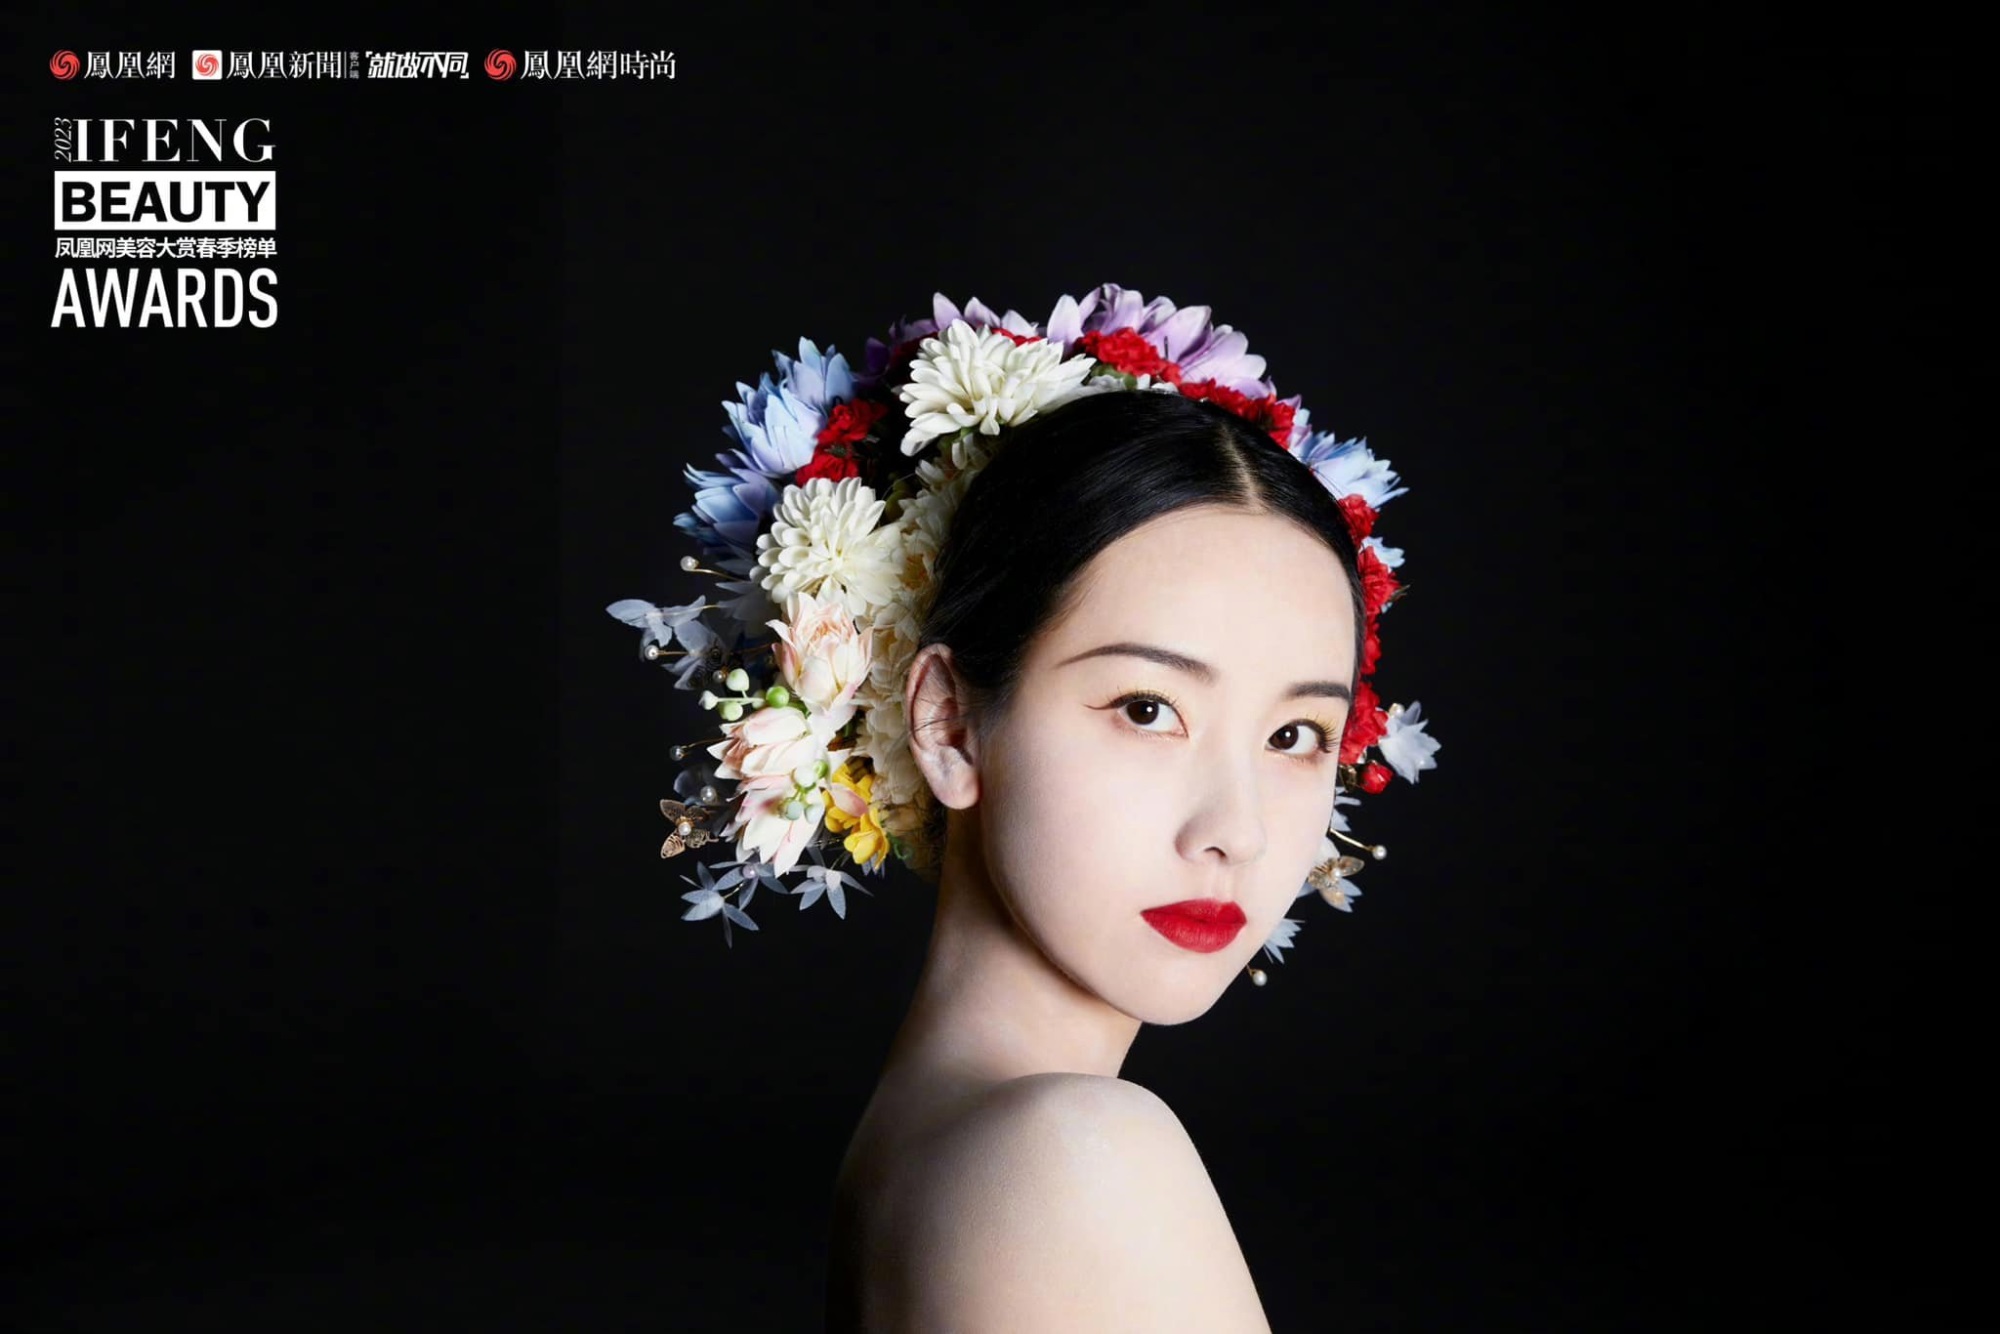 Trần Đô Linh trở thành đại sứ mùa xuân của tạp chí Ifeng Beauty Awards, xinh đẹp 'động lòng người' nhưng không bằng 'đàn chị' Triệu Lệ Dĩnh ở một điểm - Ảnh 7